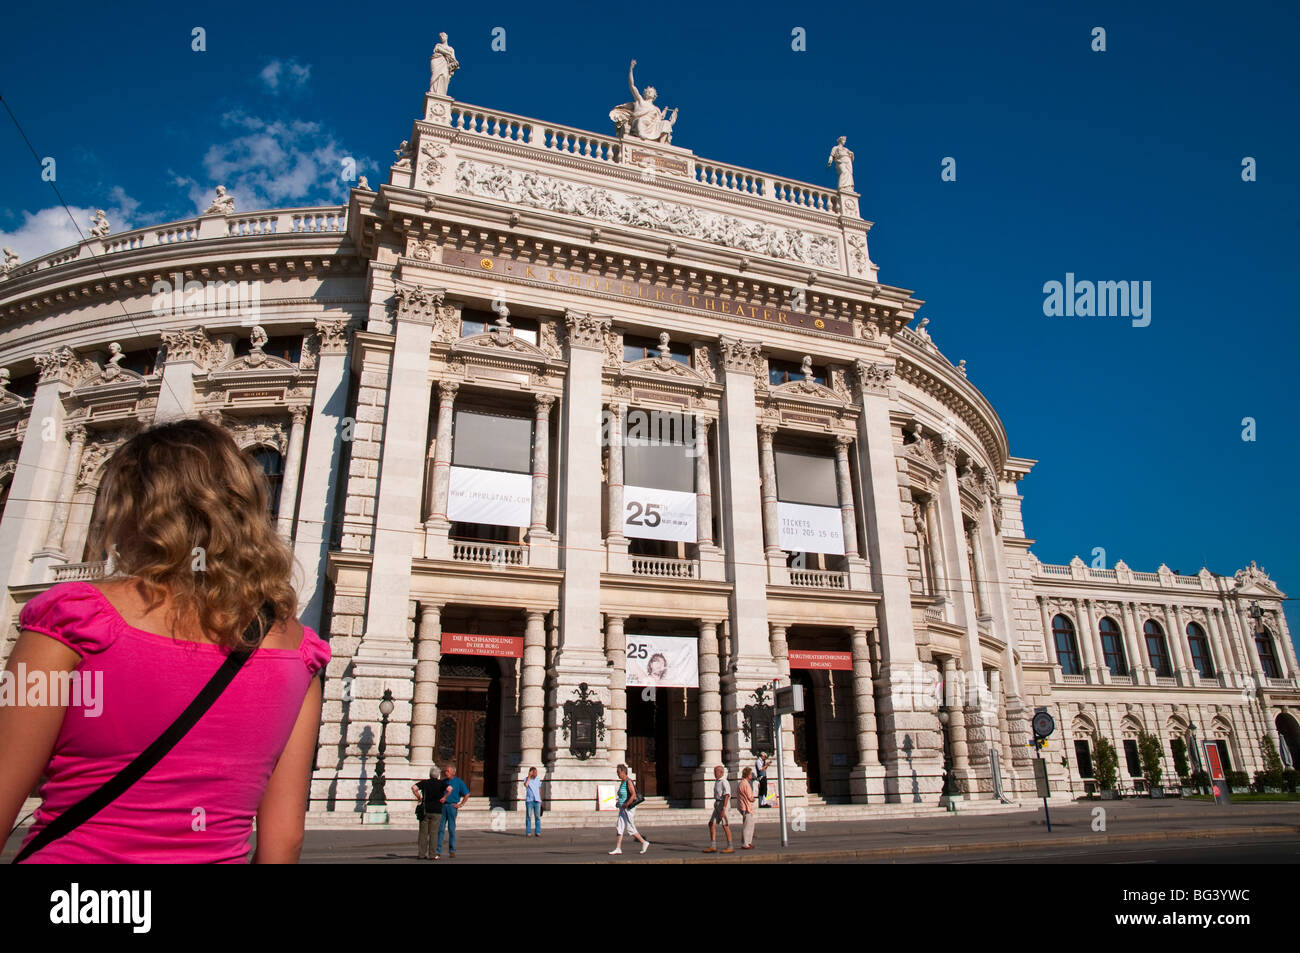 Burgtheater, Ringstraße, Wien Österreich | Burgtheater, Ringroad, Vienna, Austria Foto Stock